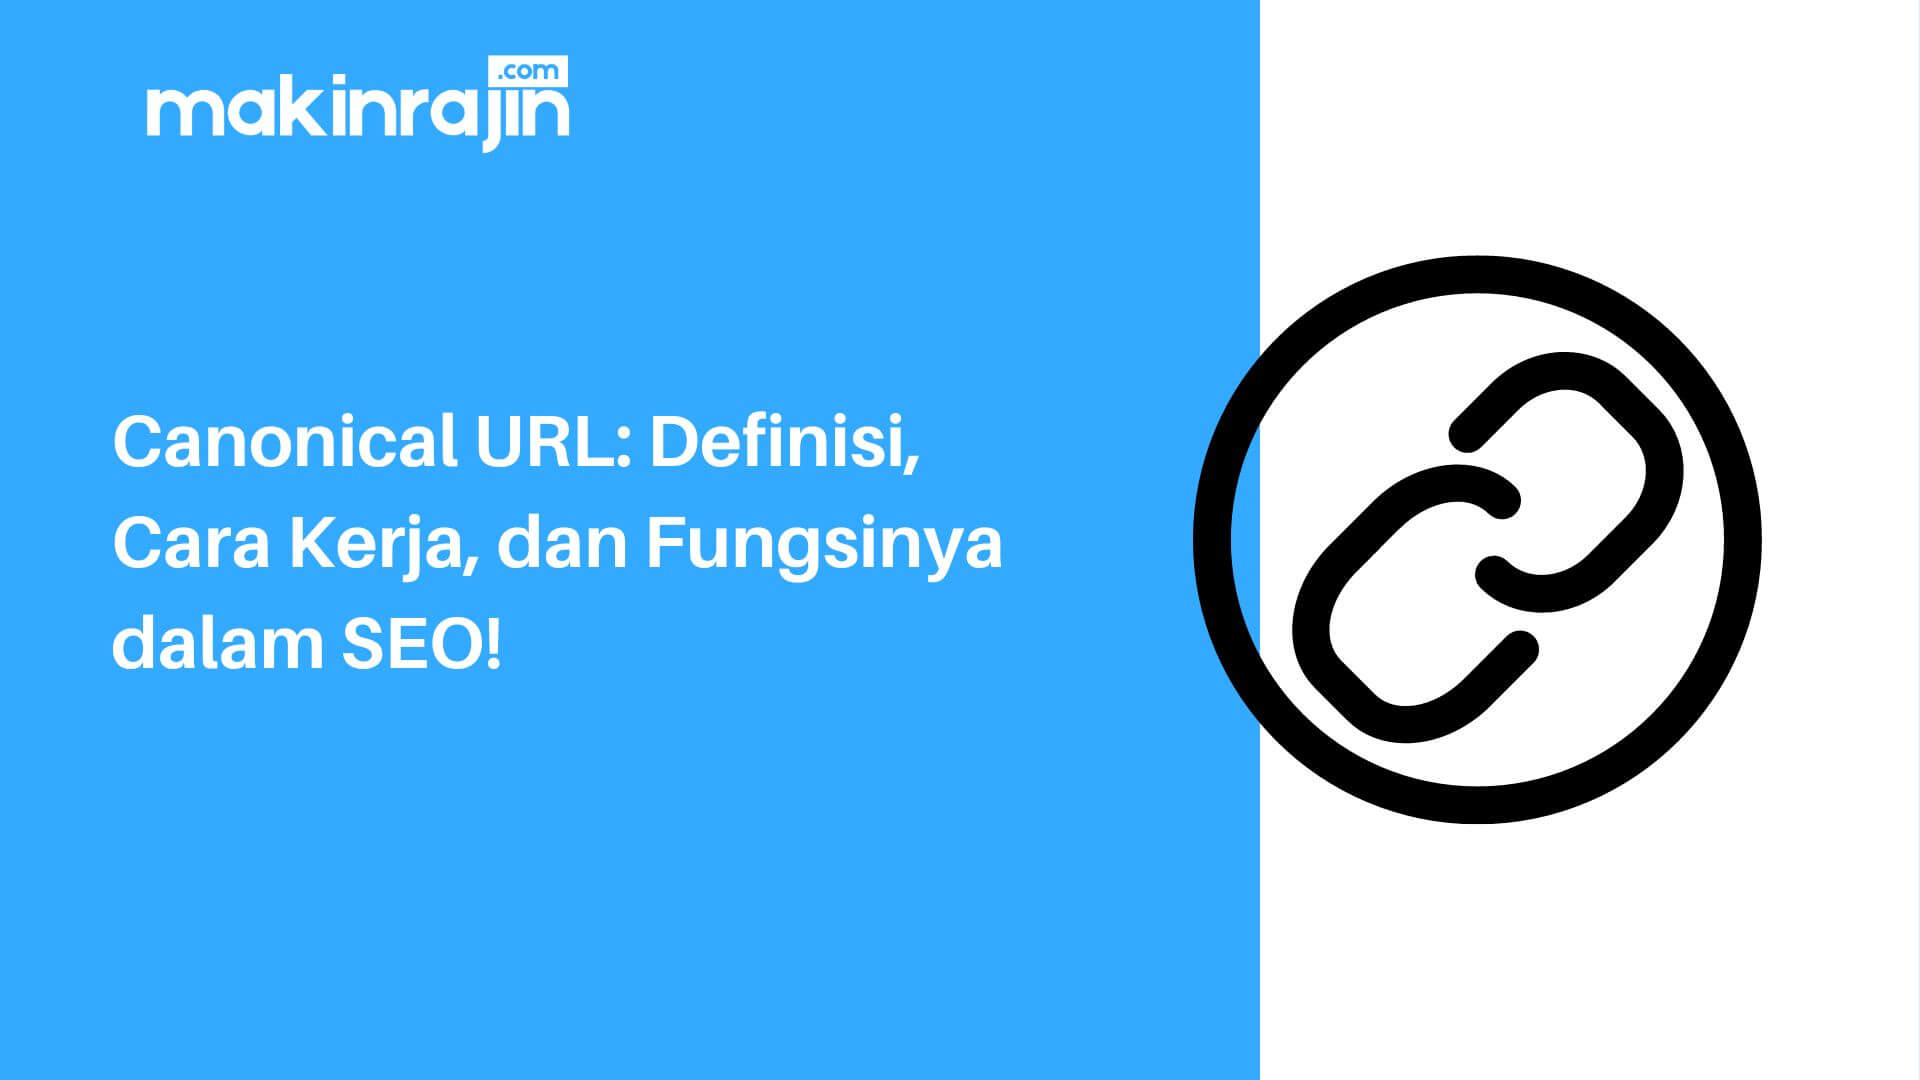 Canonical URL: Definisi, Cara Kerja, dan Fungsinya dalam SEO!